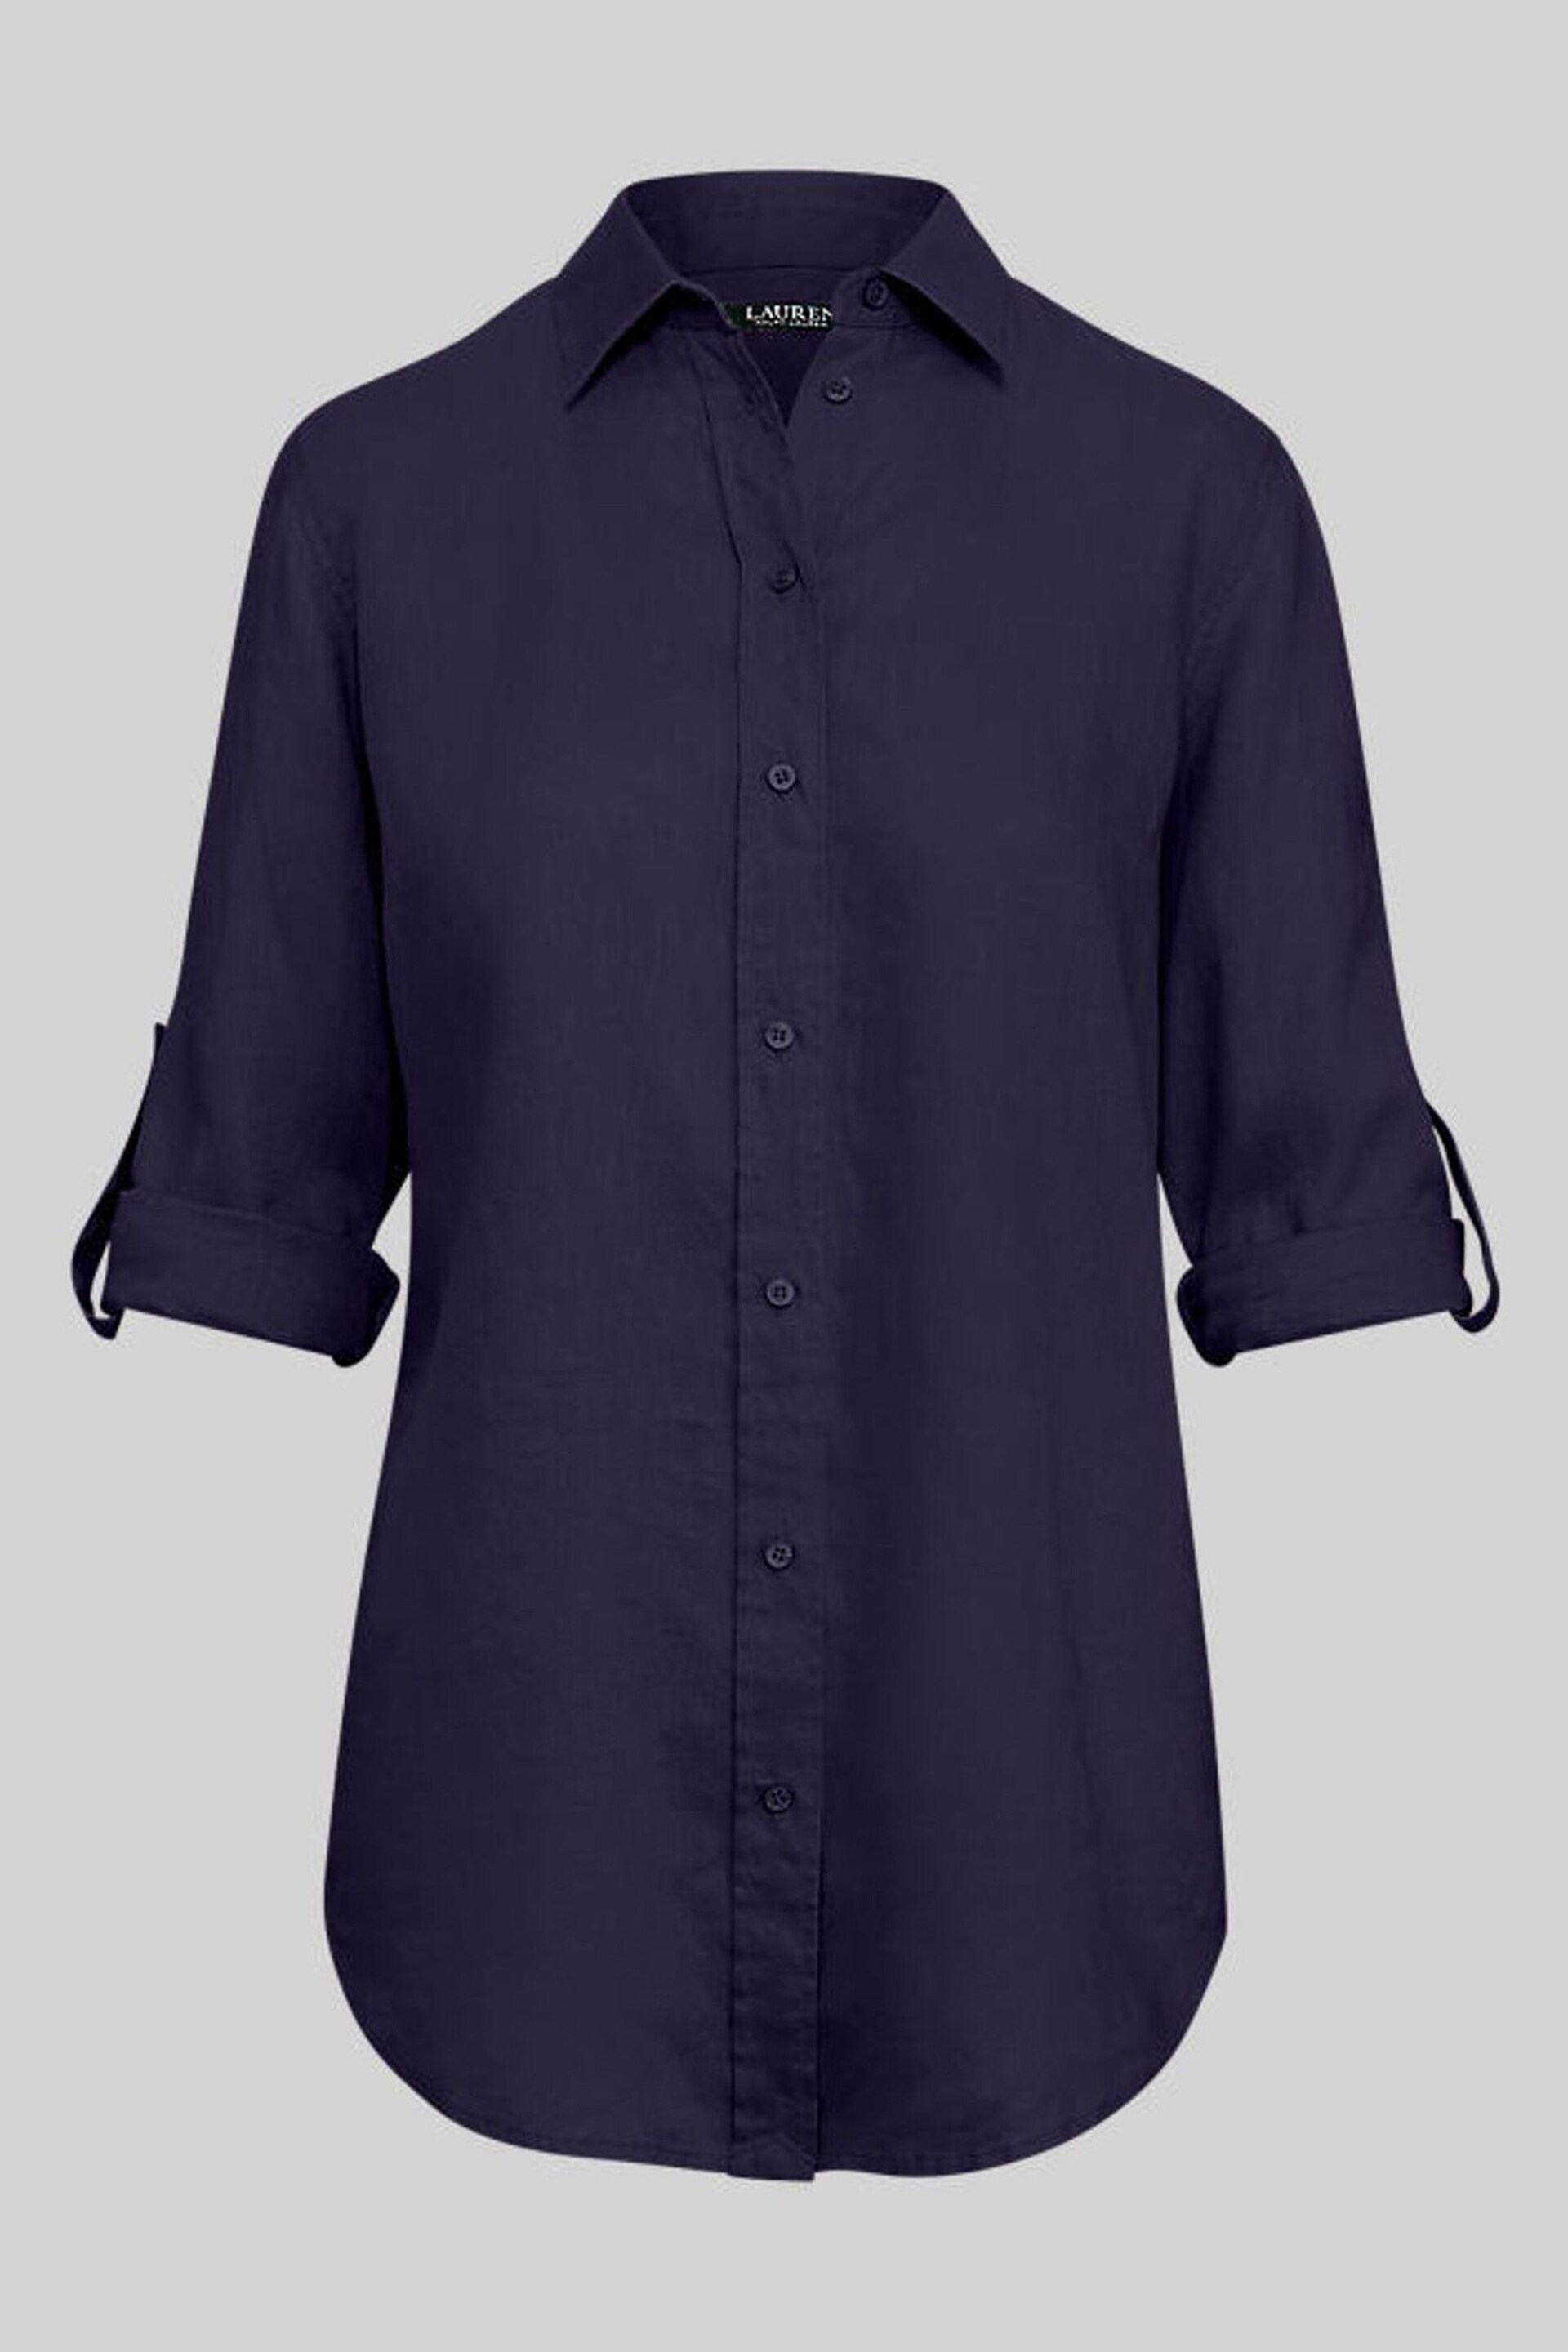 Lauren Ralph Lauren Karrie Long Sleeve Linen Shirt - Image 8 of 9